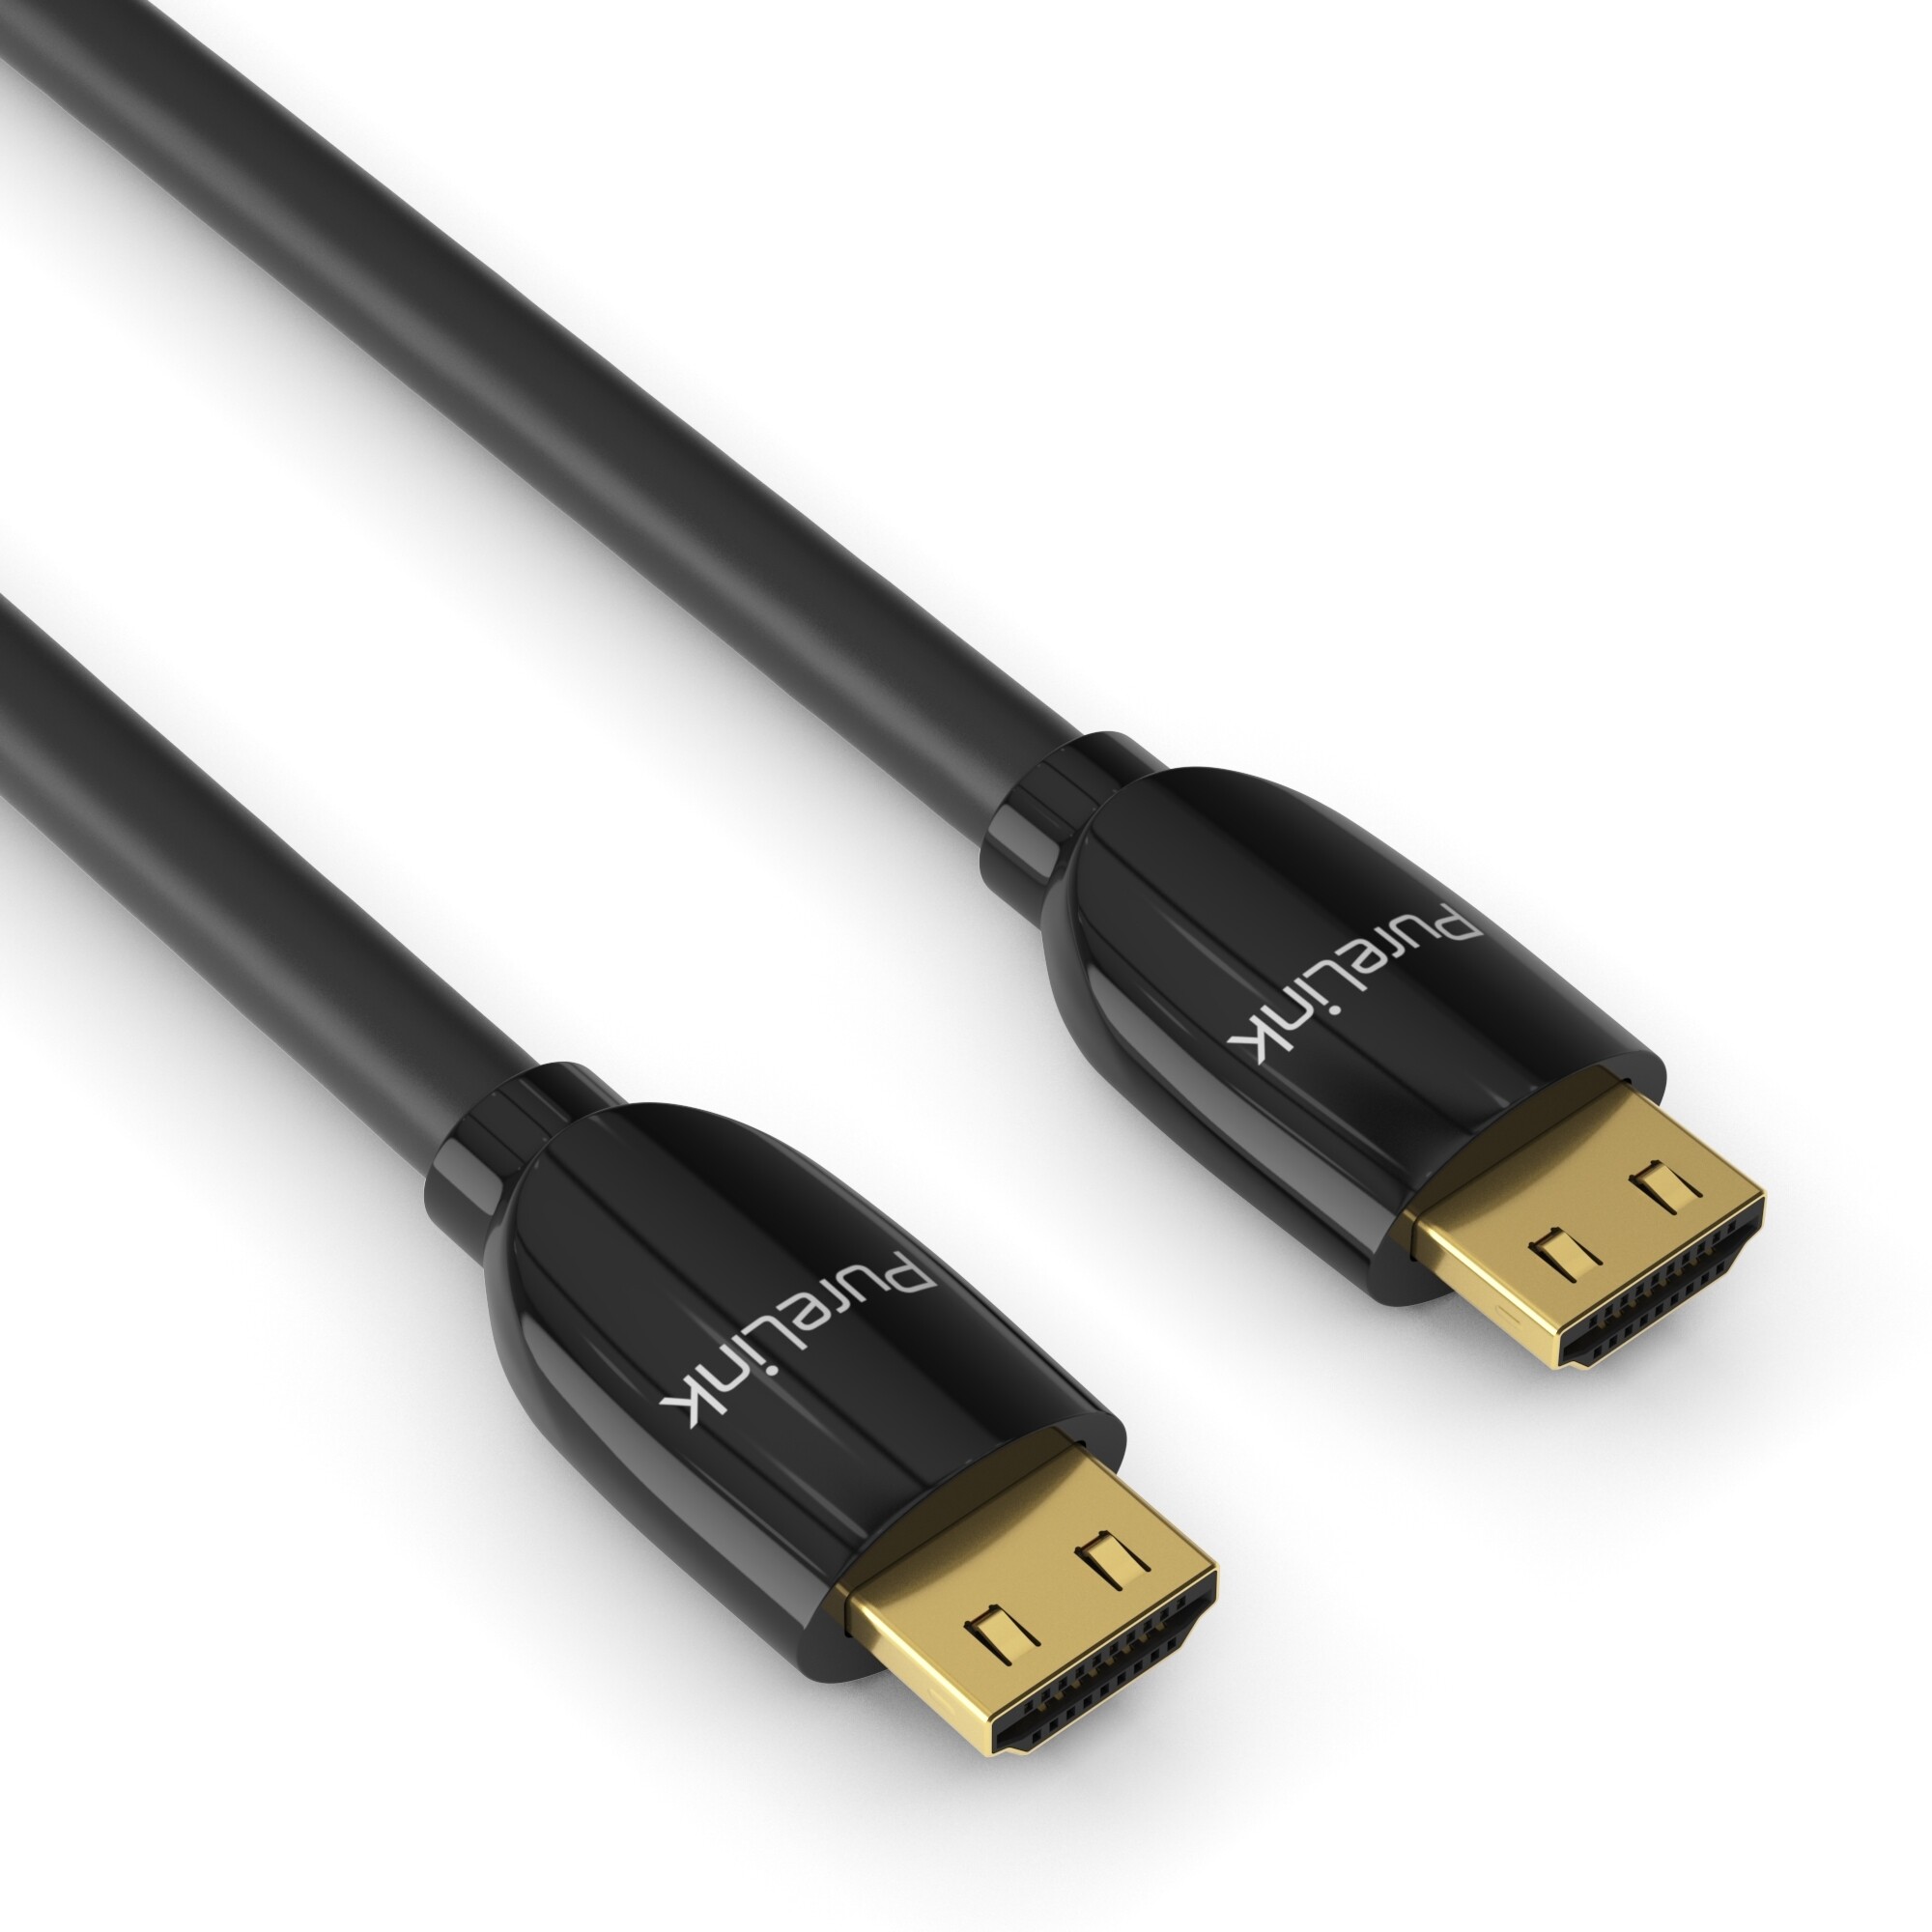 PureLink-PS3000-Premium-Highspeed-HDMI-Kabel-mit-Ethernet-Zertifiziert-1-80m